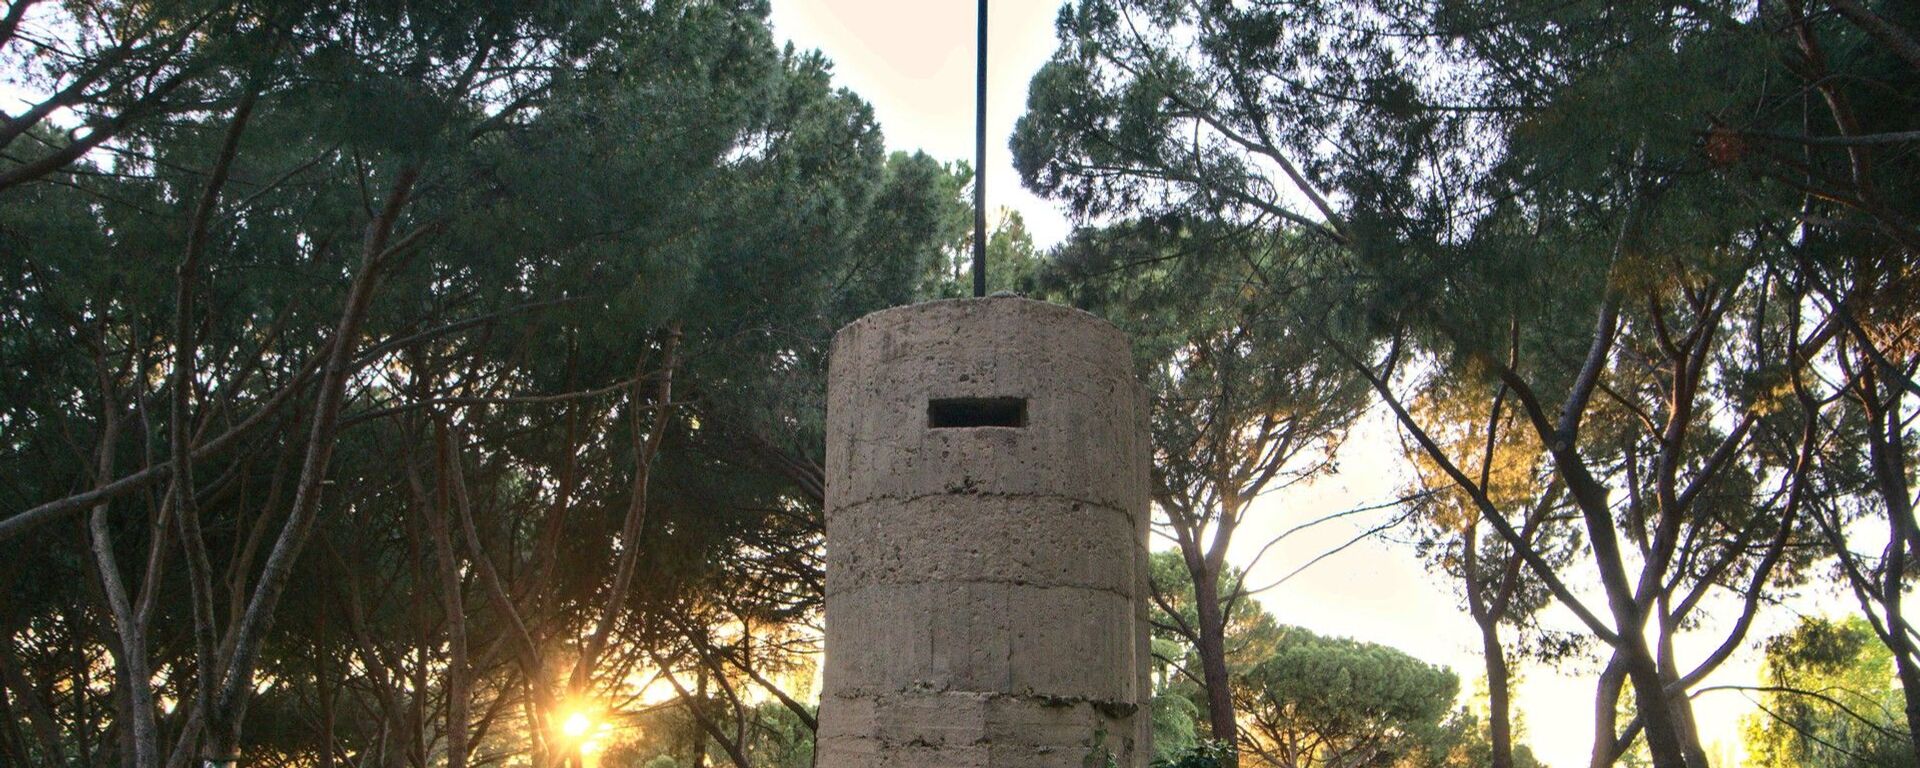 Un fortín de la Guerra Civil en el Parque del Oeste en Madrid - Sputnik Mundo, 1920, 23.10.2020